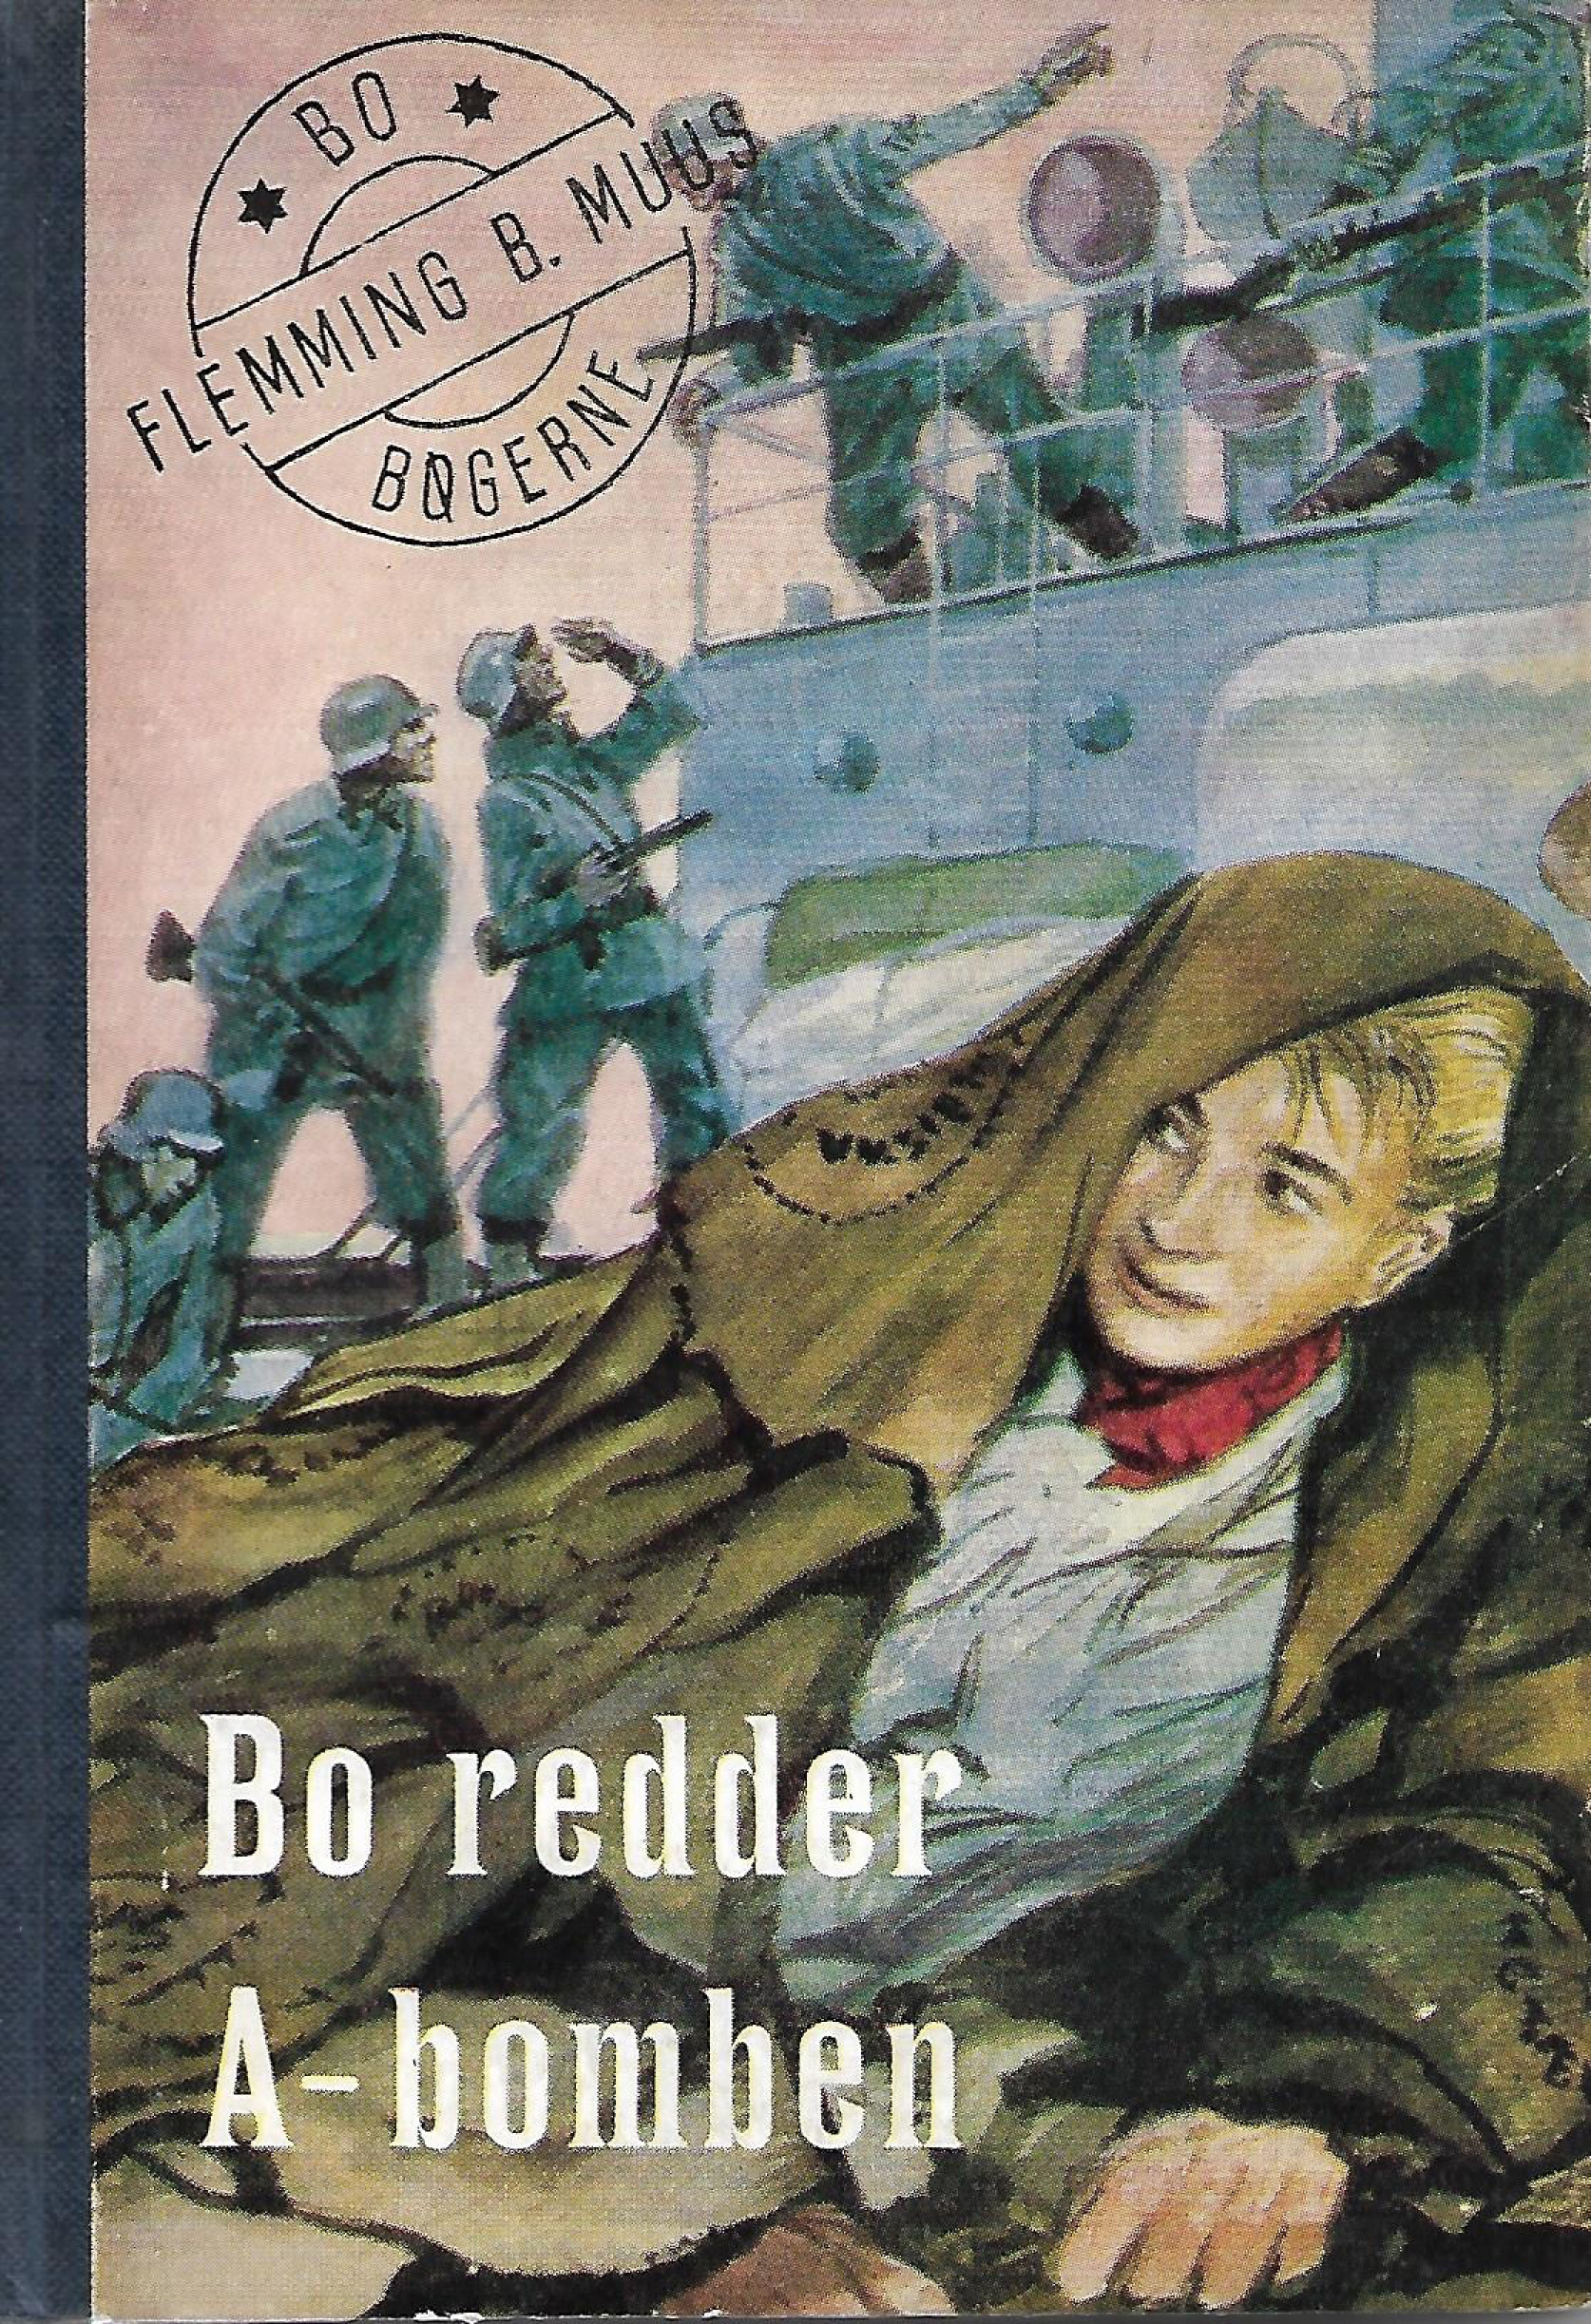 Bo redder A-bomben - Flemming B Muus-1